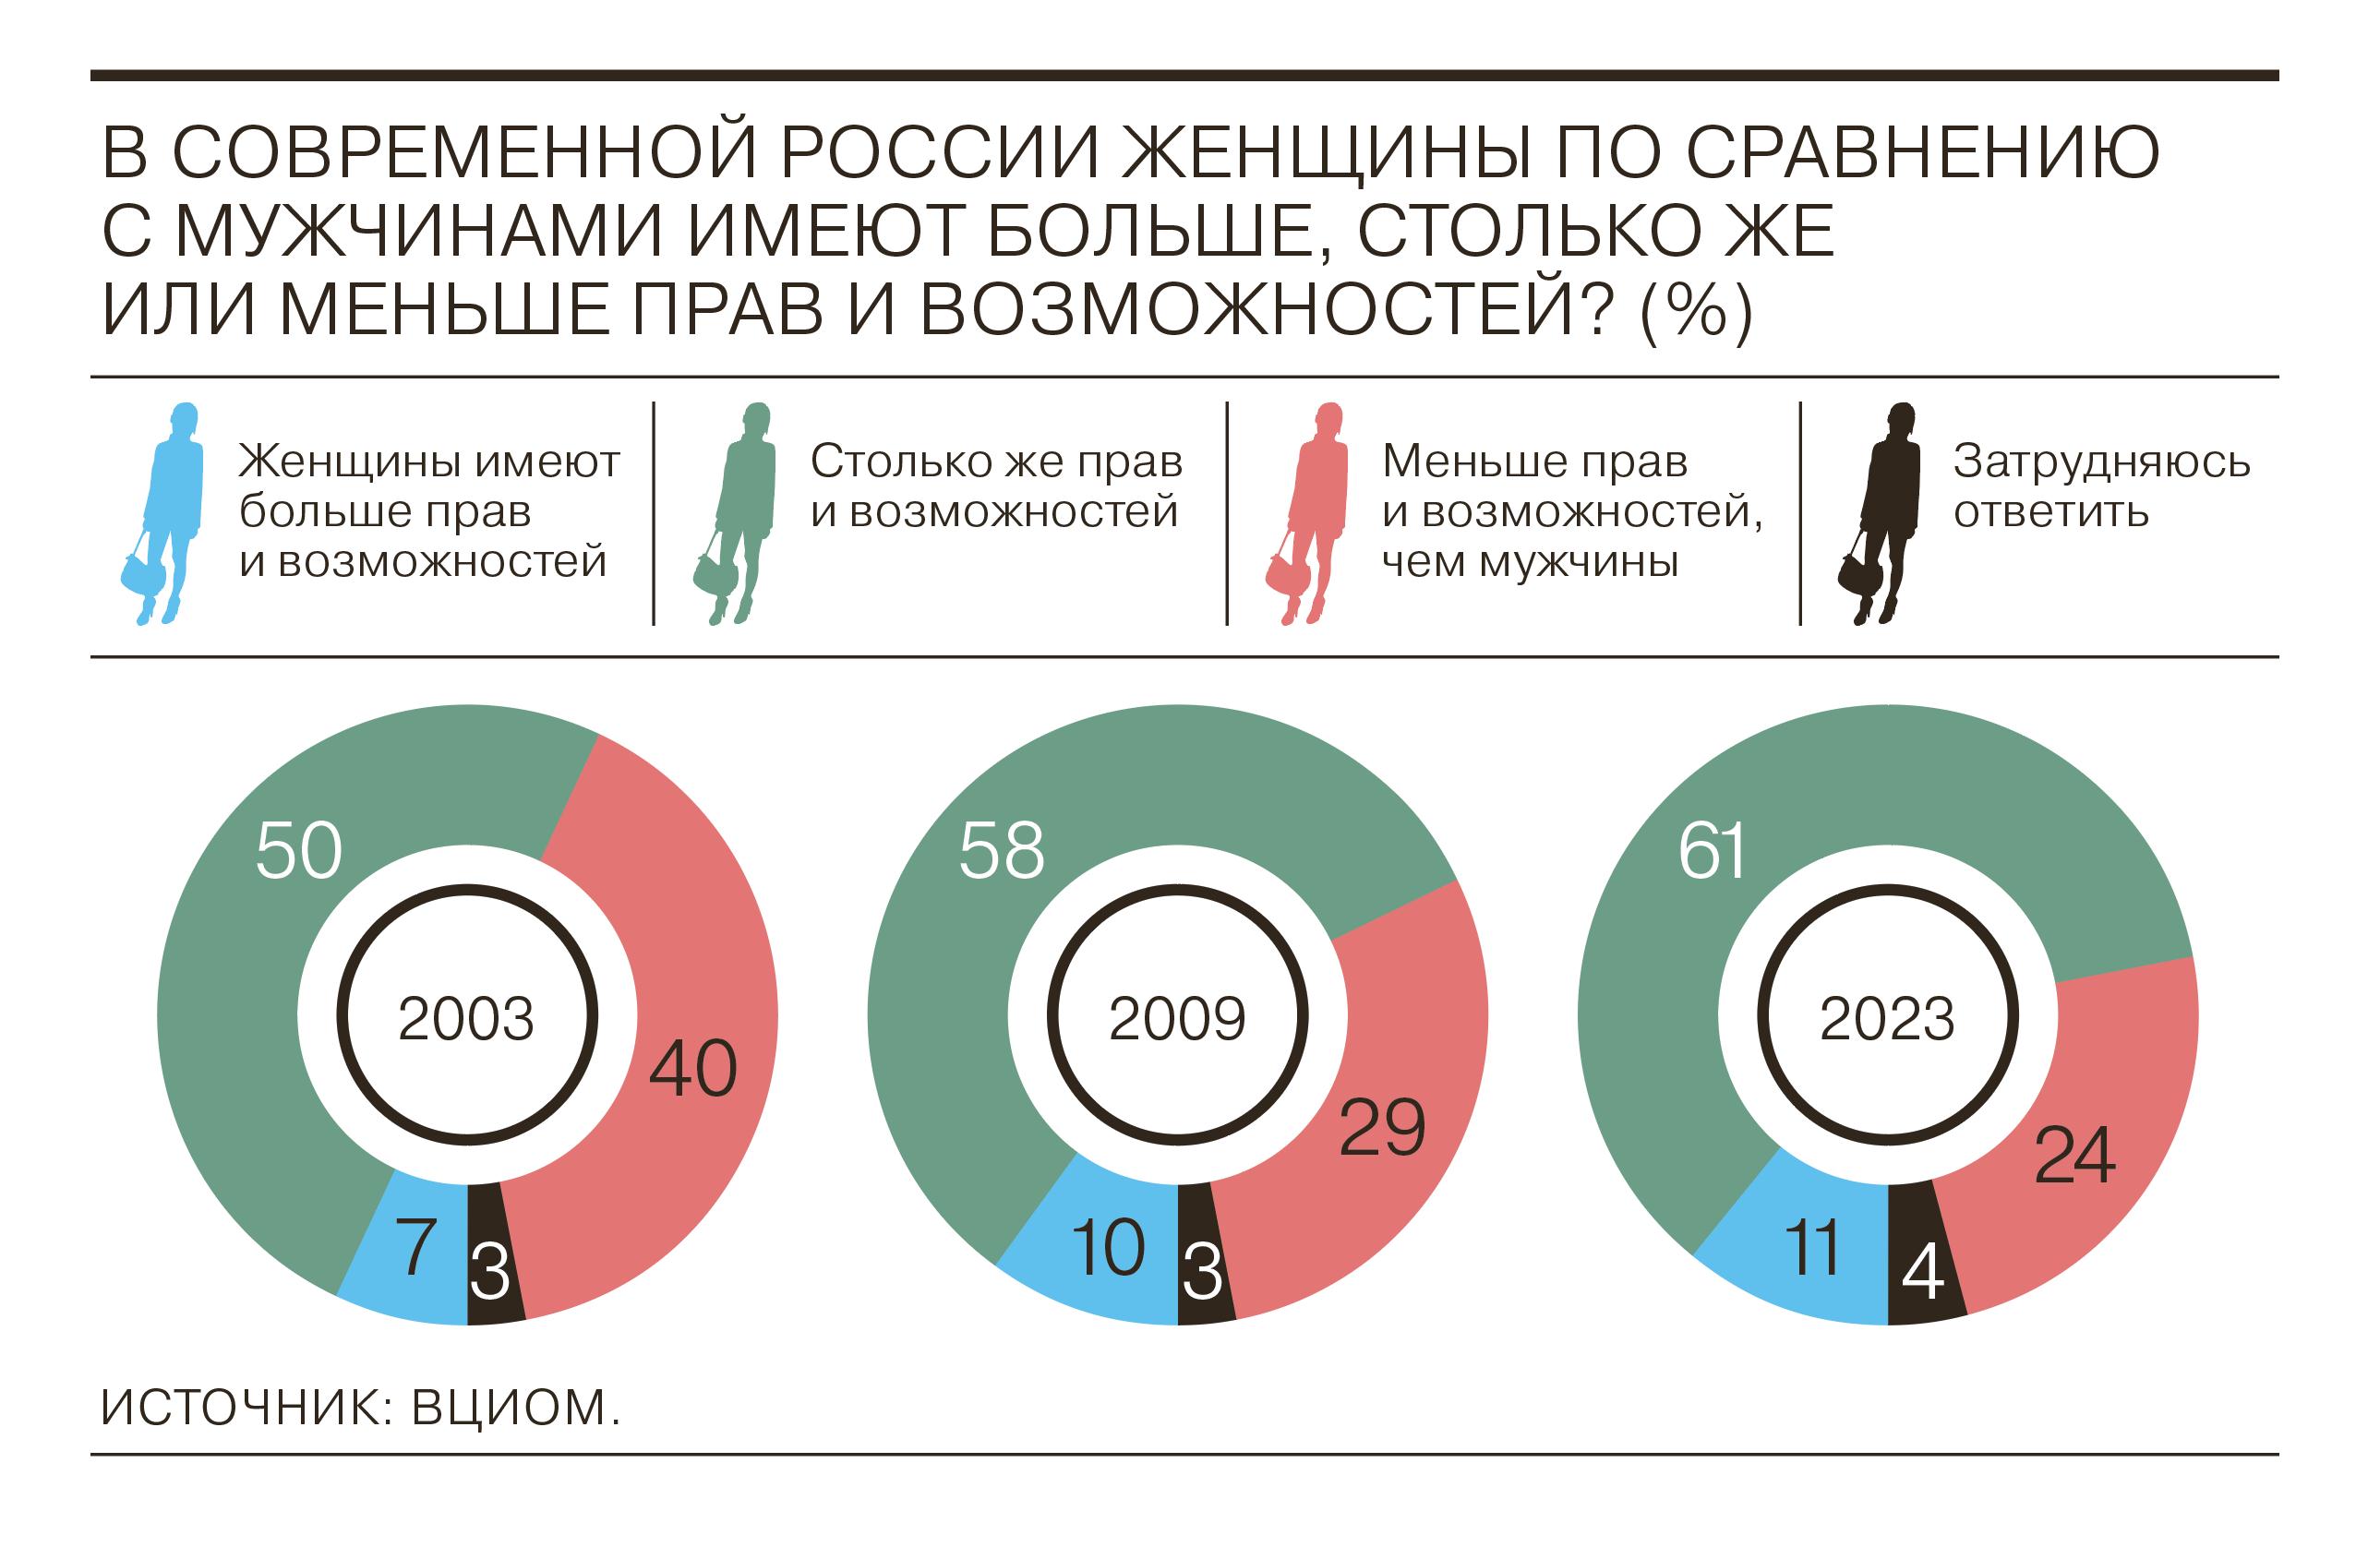 Большинство считает, что у мужчин и женщин в России равные права и возможности